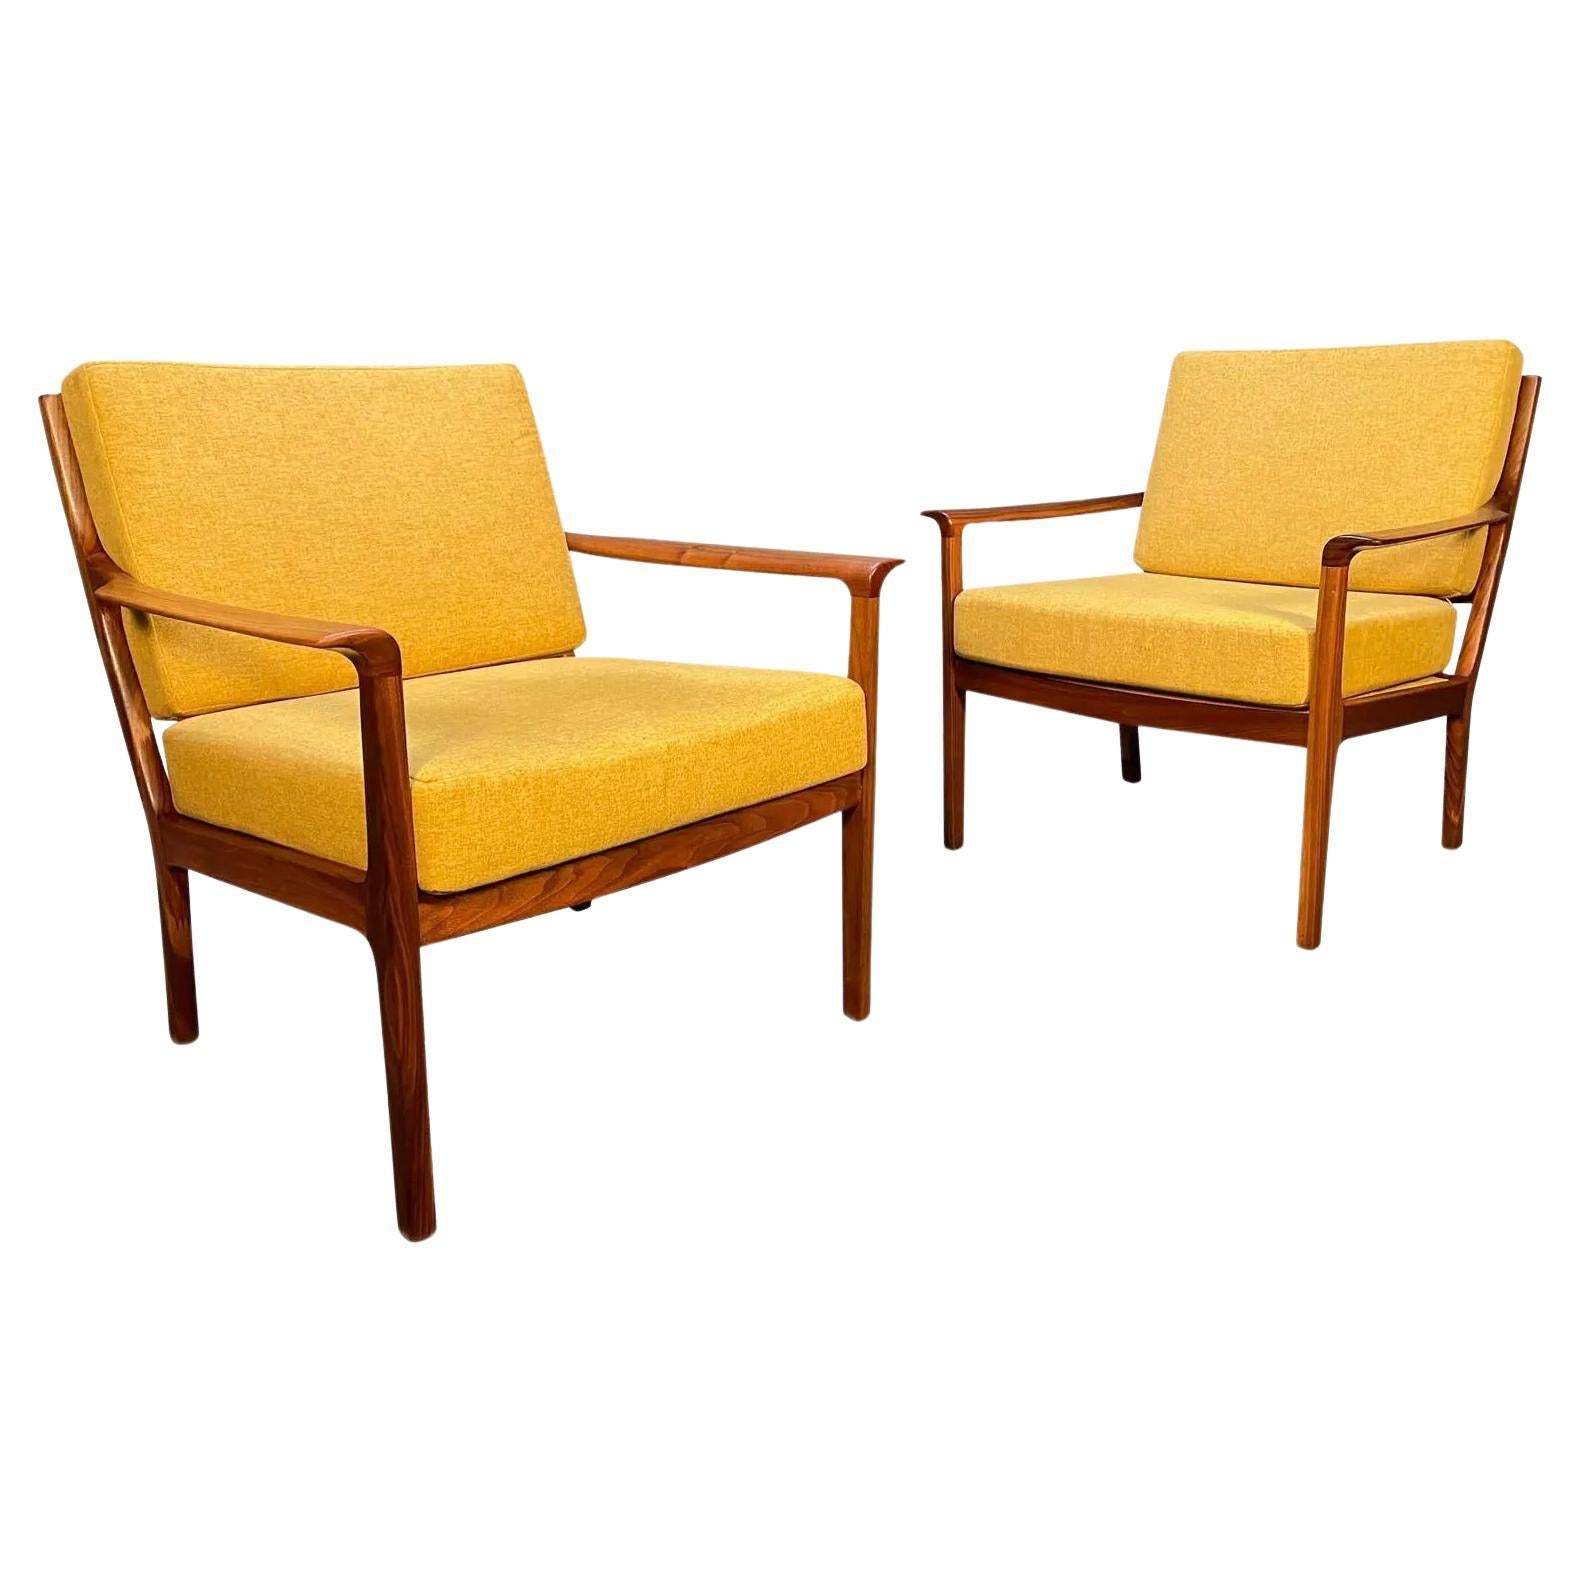 Pair of Vintage Midcentury Walnut Lounge Chairs "Model 935" by Fredrik Kayser